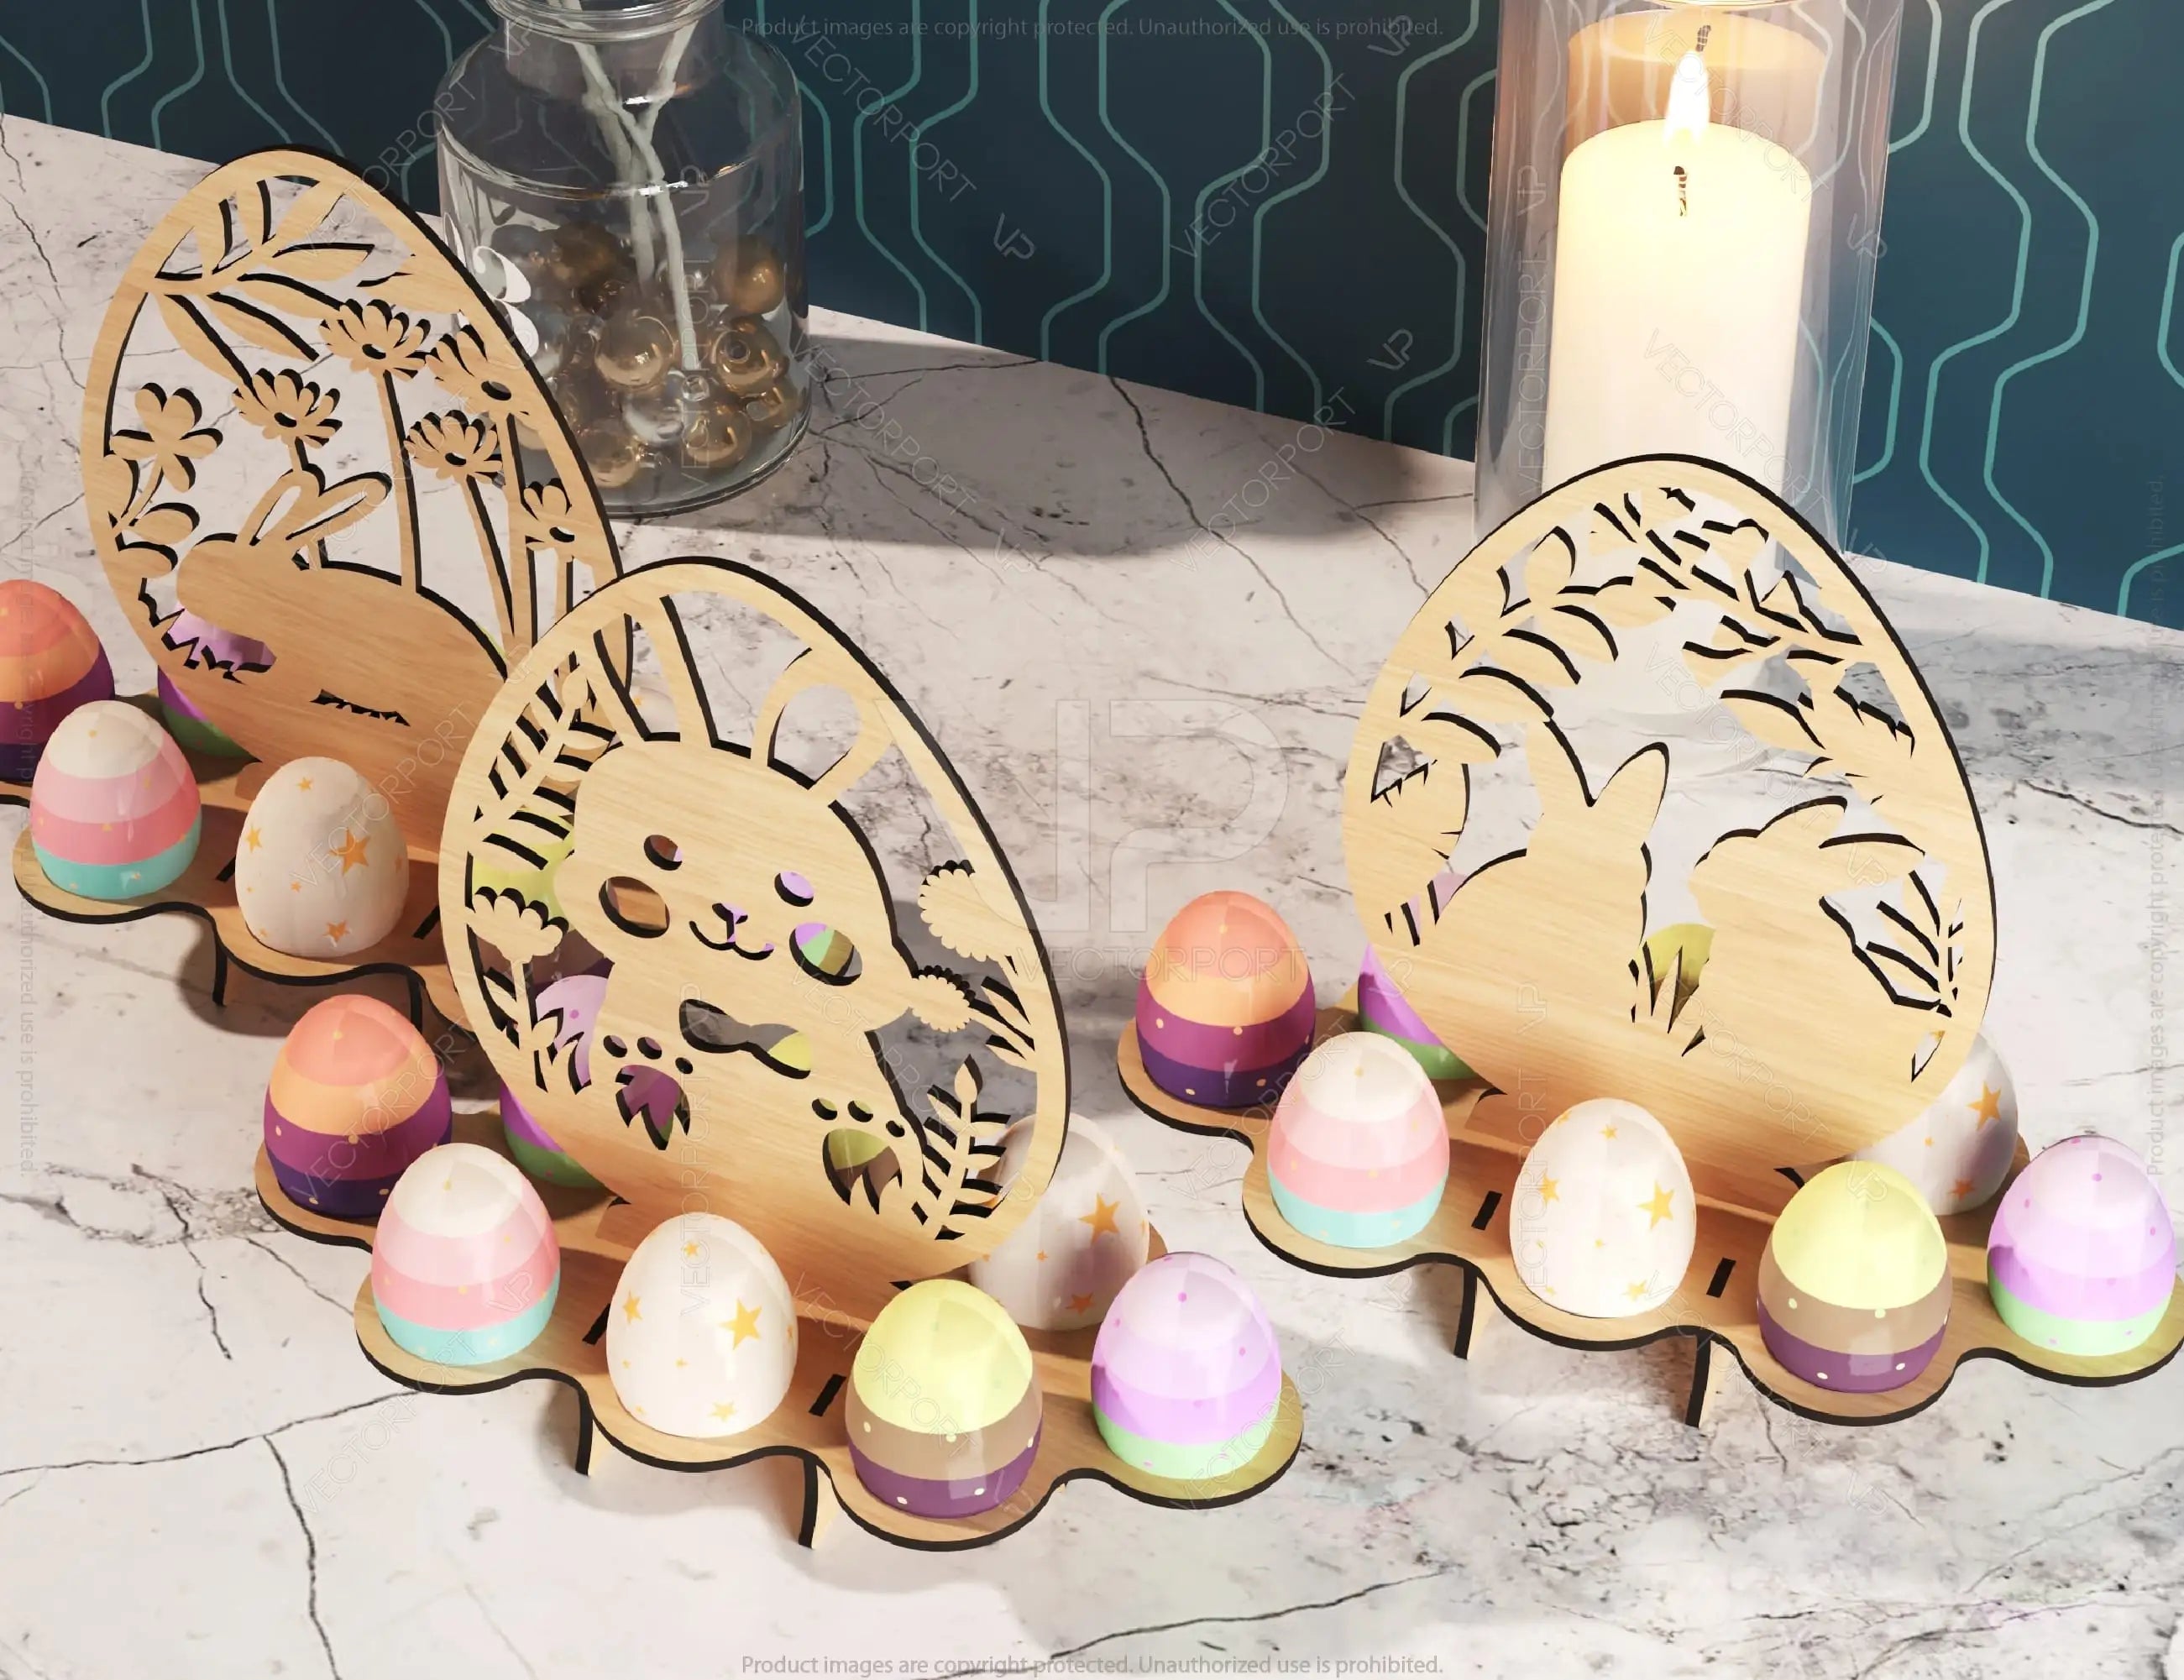 Easter Ornaments Egg Stand SVG bundle Bunny Egg Tray Holder stand Digital Download |#U191|